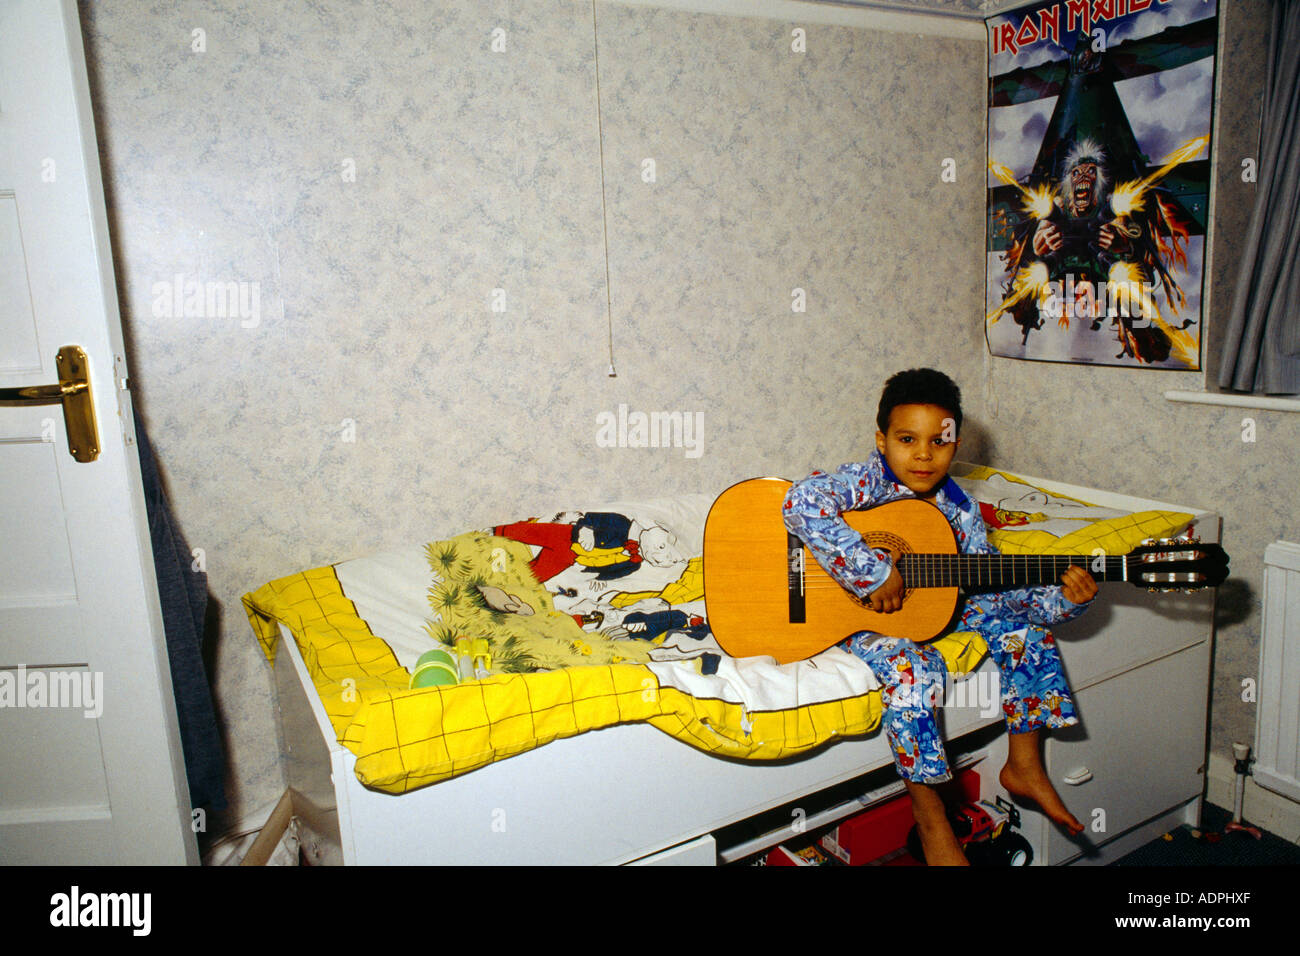 Afro Karibik junge im Baumwolle Fußball Pyjama spielt akustische Gitarre auf Bett sitzend mit Rupert Bär-Baumwollbezug Stockfoto